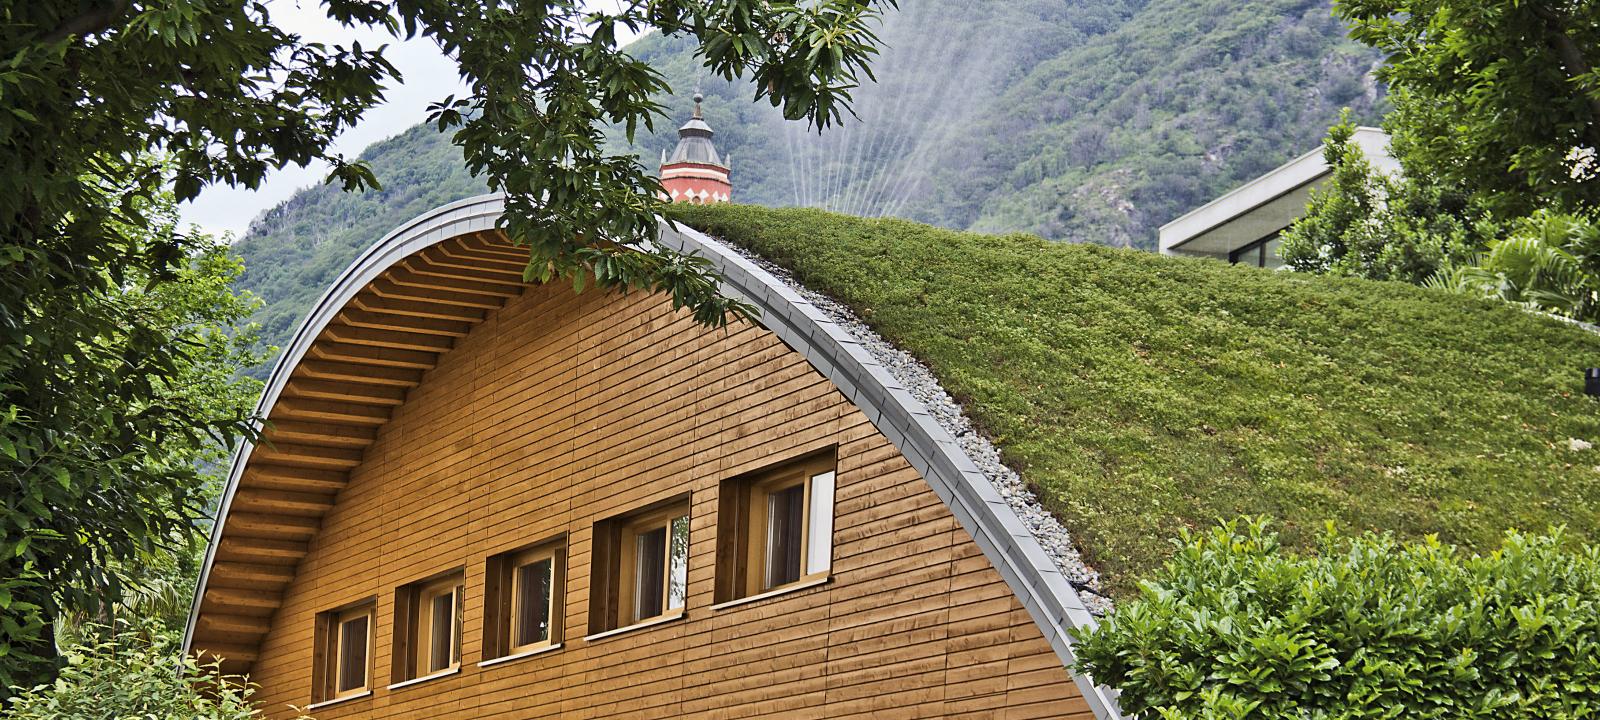 Casa de madera con la cubierta abovedada ajardinada